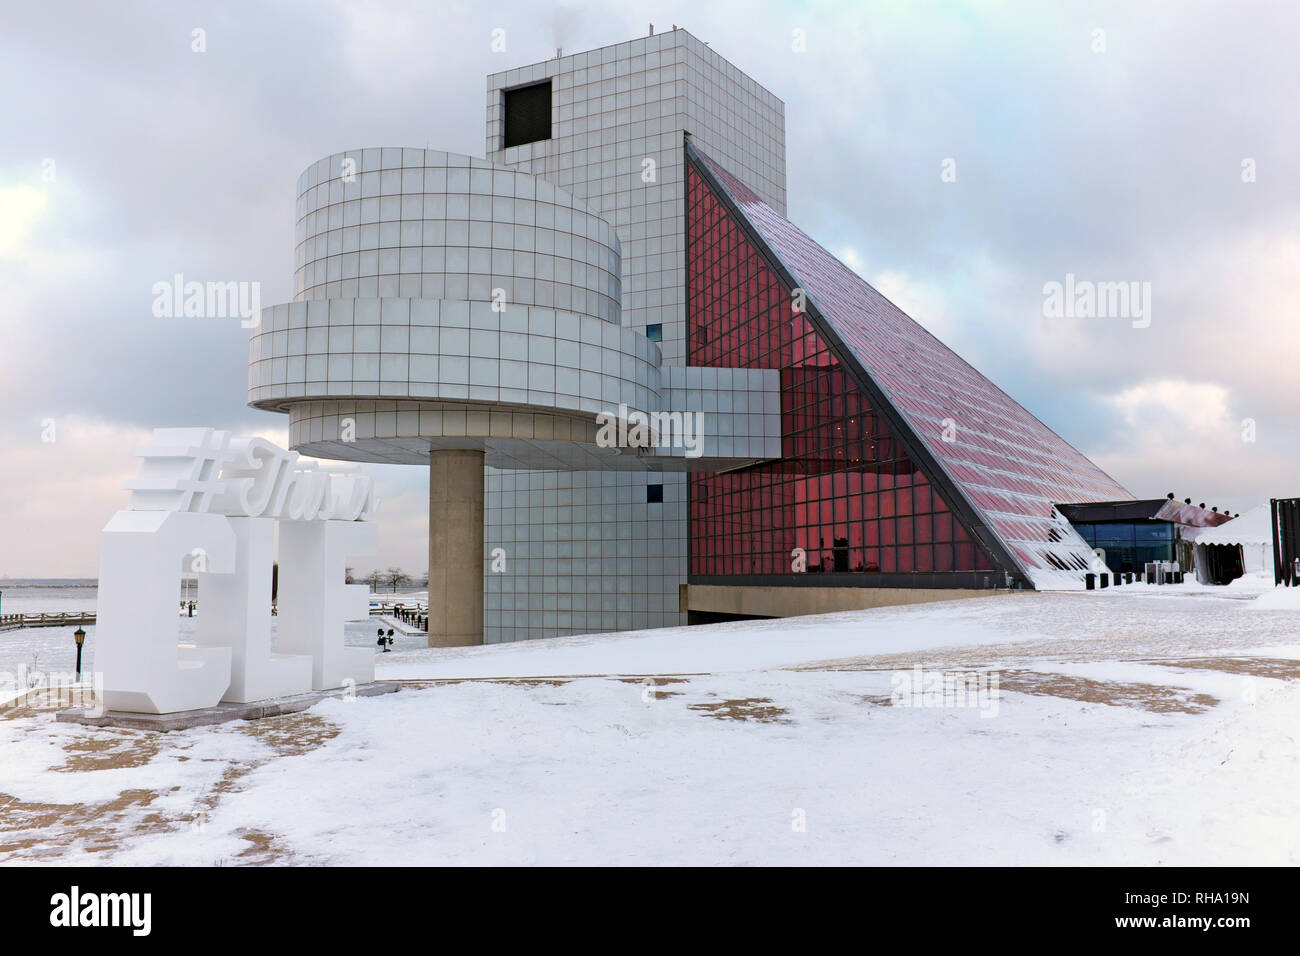 Die nordküste Hafen Winter Wetter in Cleveland, Ohio bringt Schnee in die Rock and Roll Hall of Fame und Museum, eine große Attraktion am See. Stockfoto